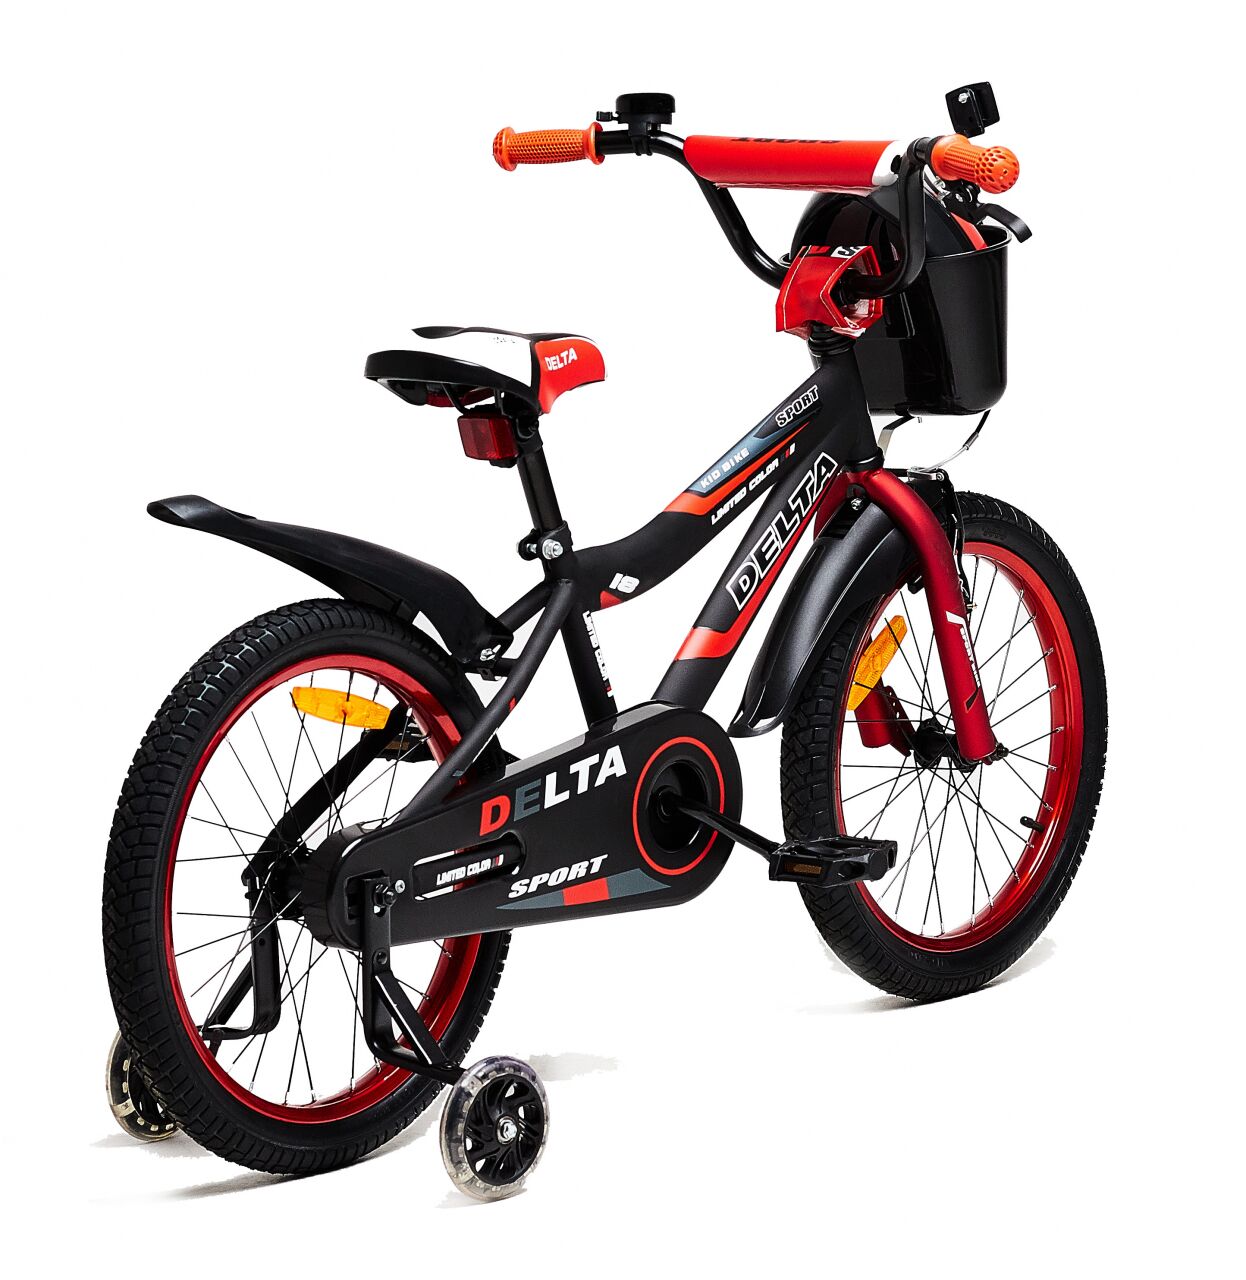 Детский велосипед DELTA Sport 18 (черный/красный, 2020)